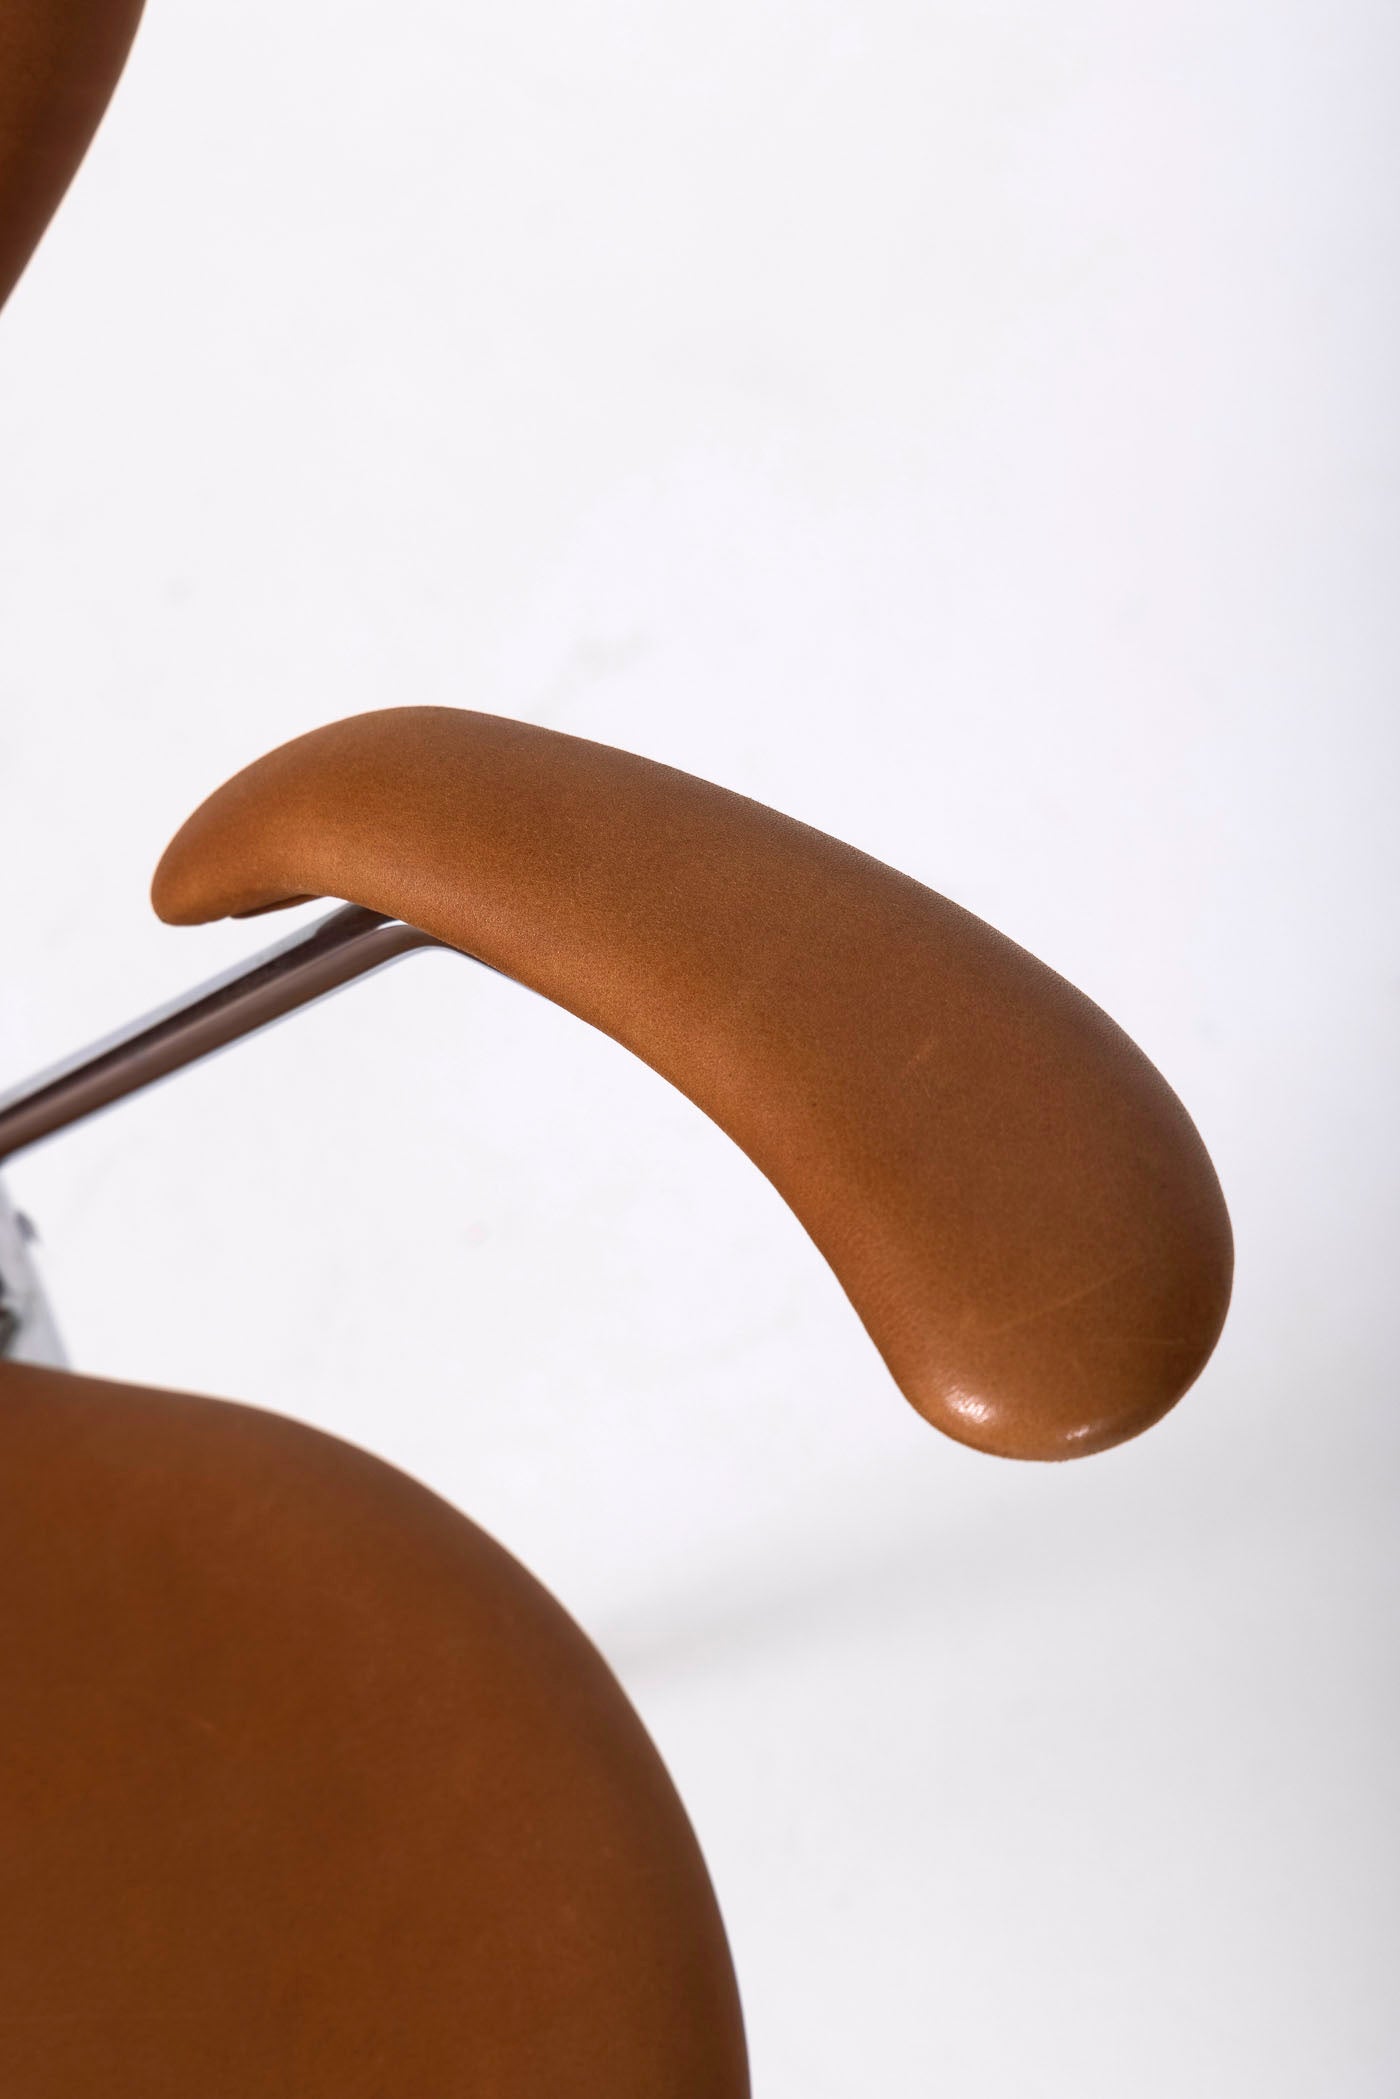 Fauteuil en cuir Arne Jacobsen